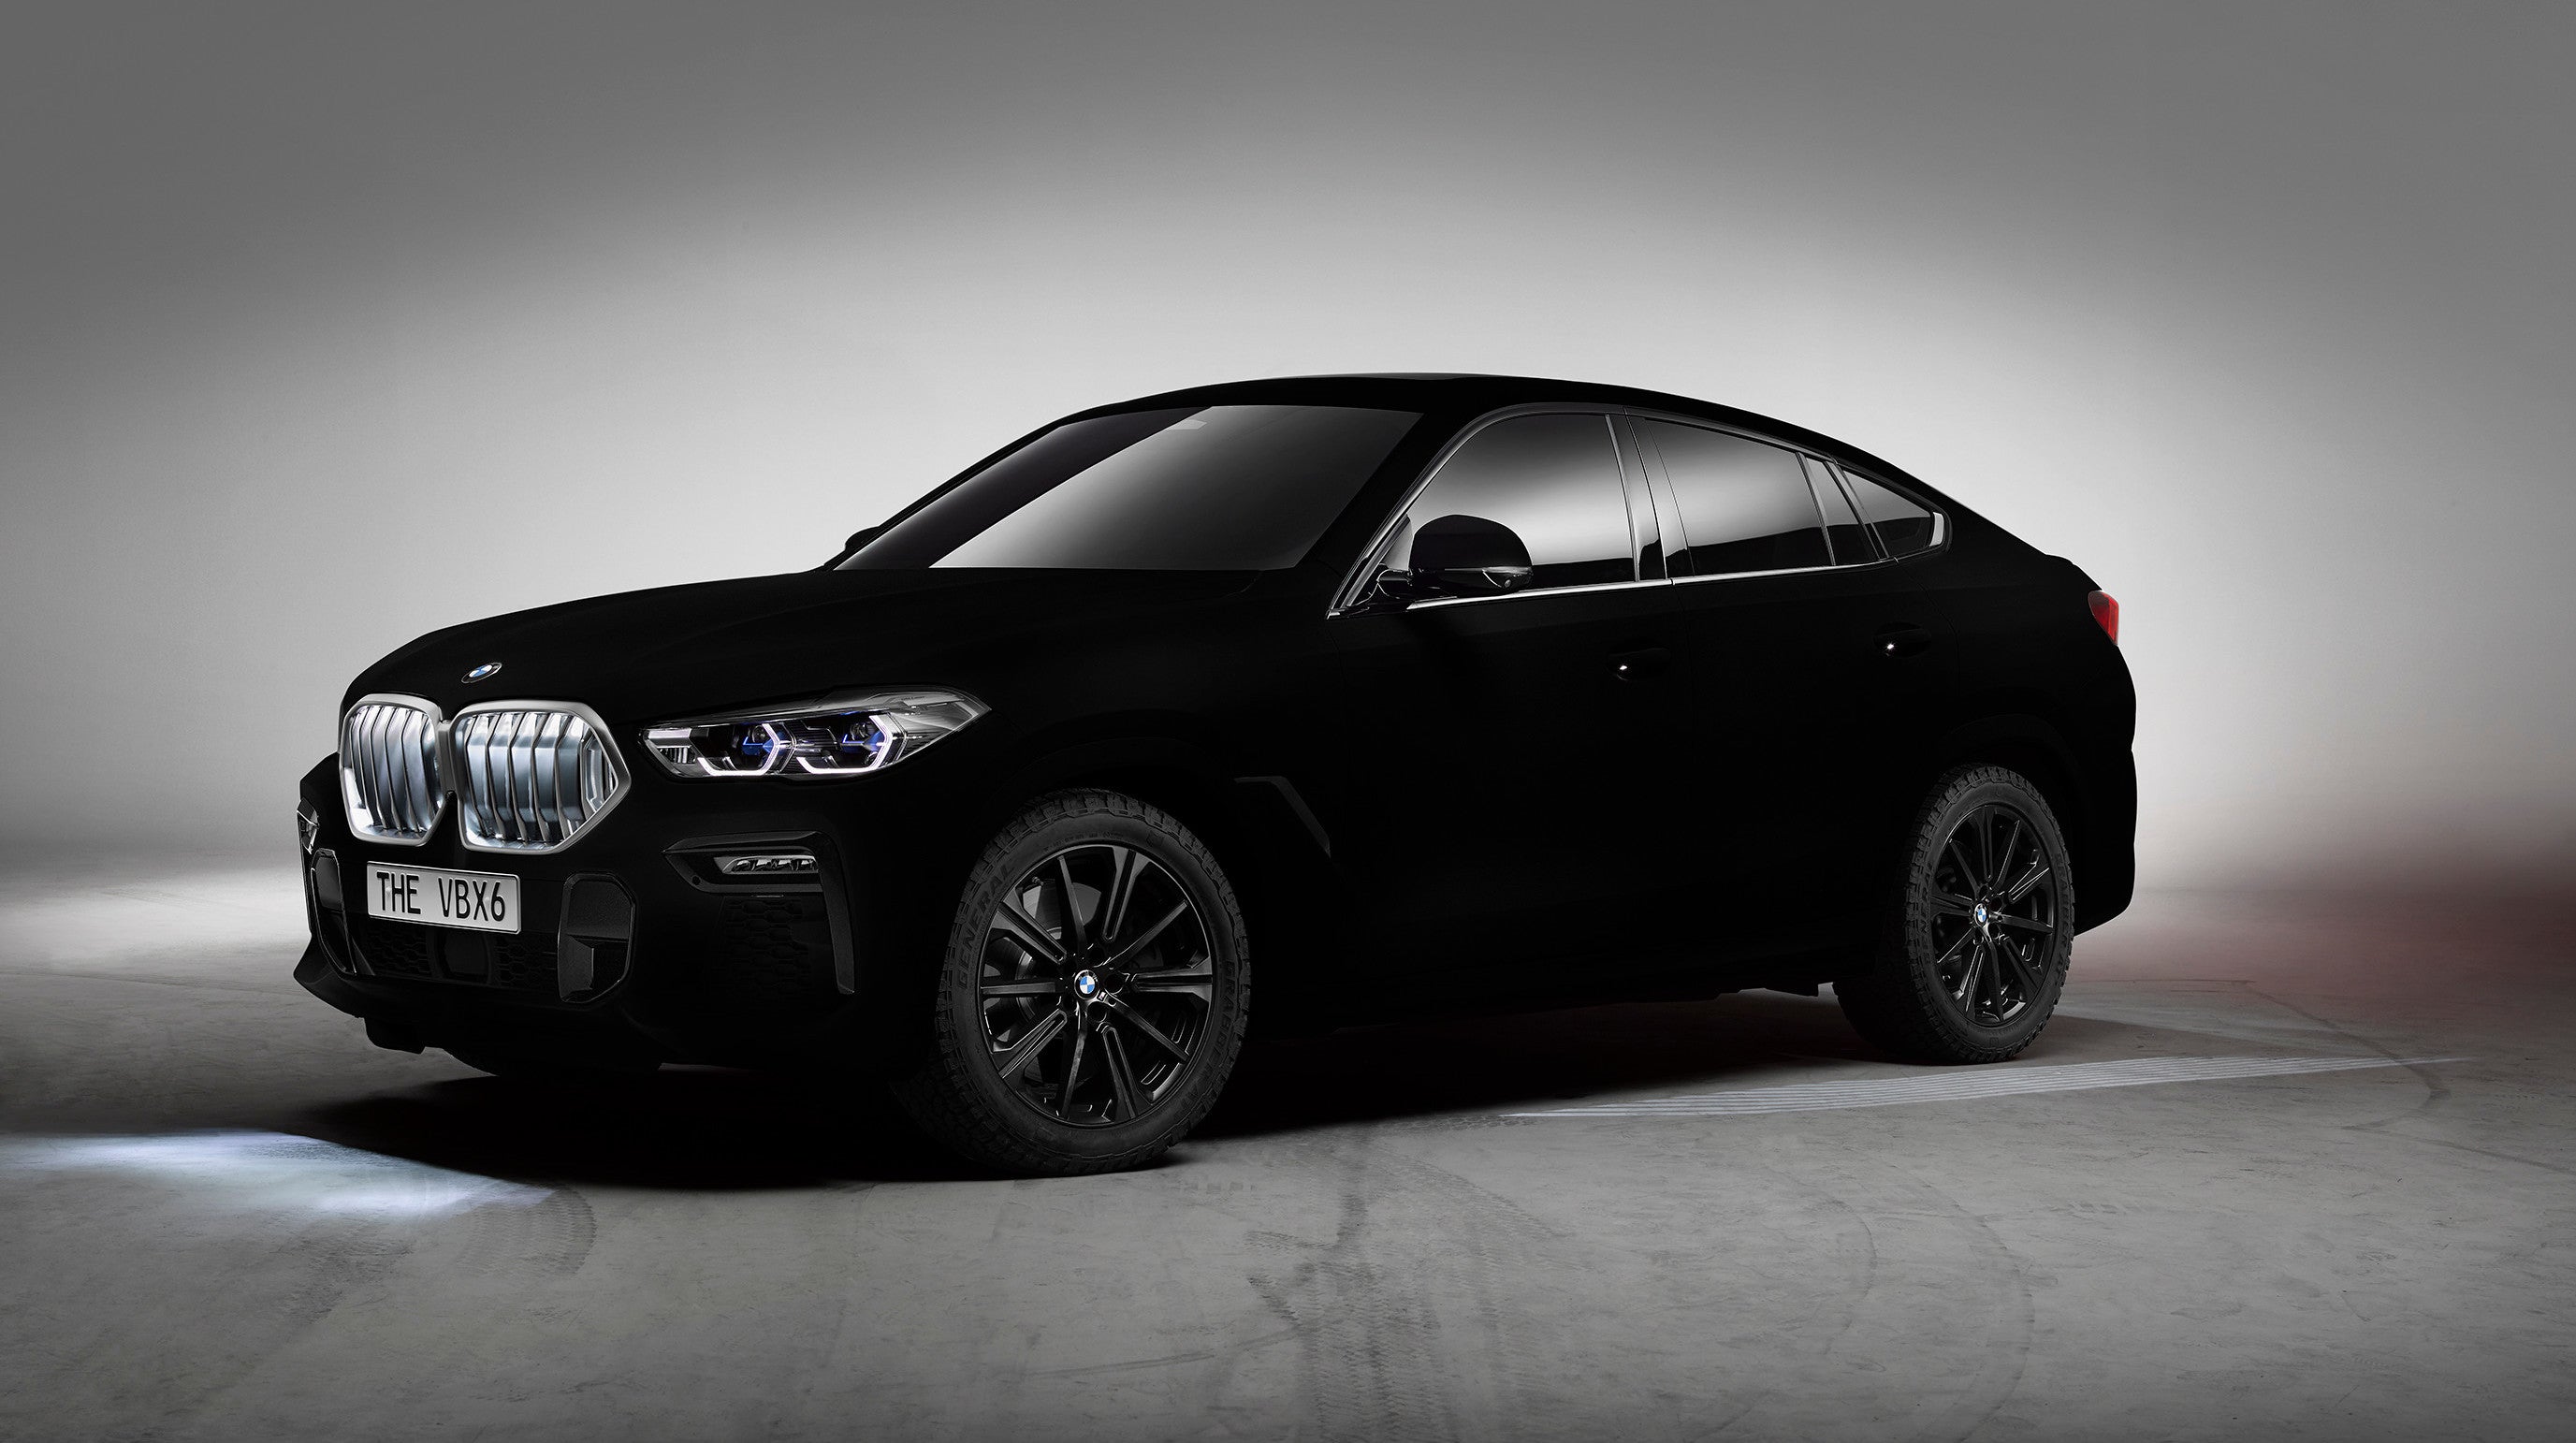 BMW Made An X6 That Absorbs 99.965% Of Light